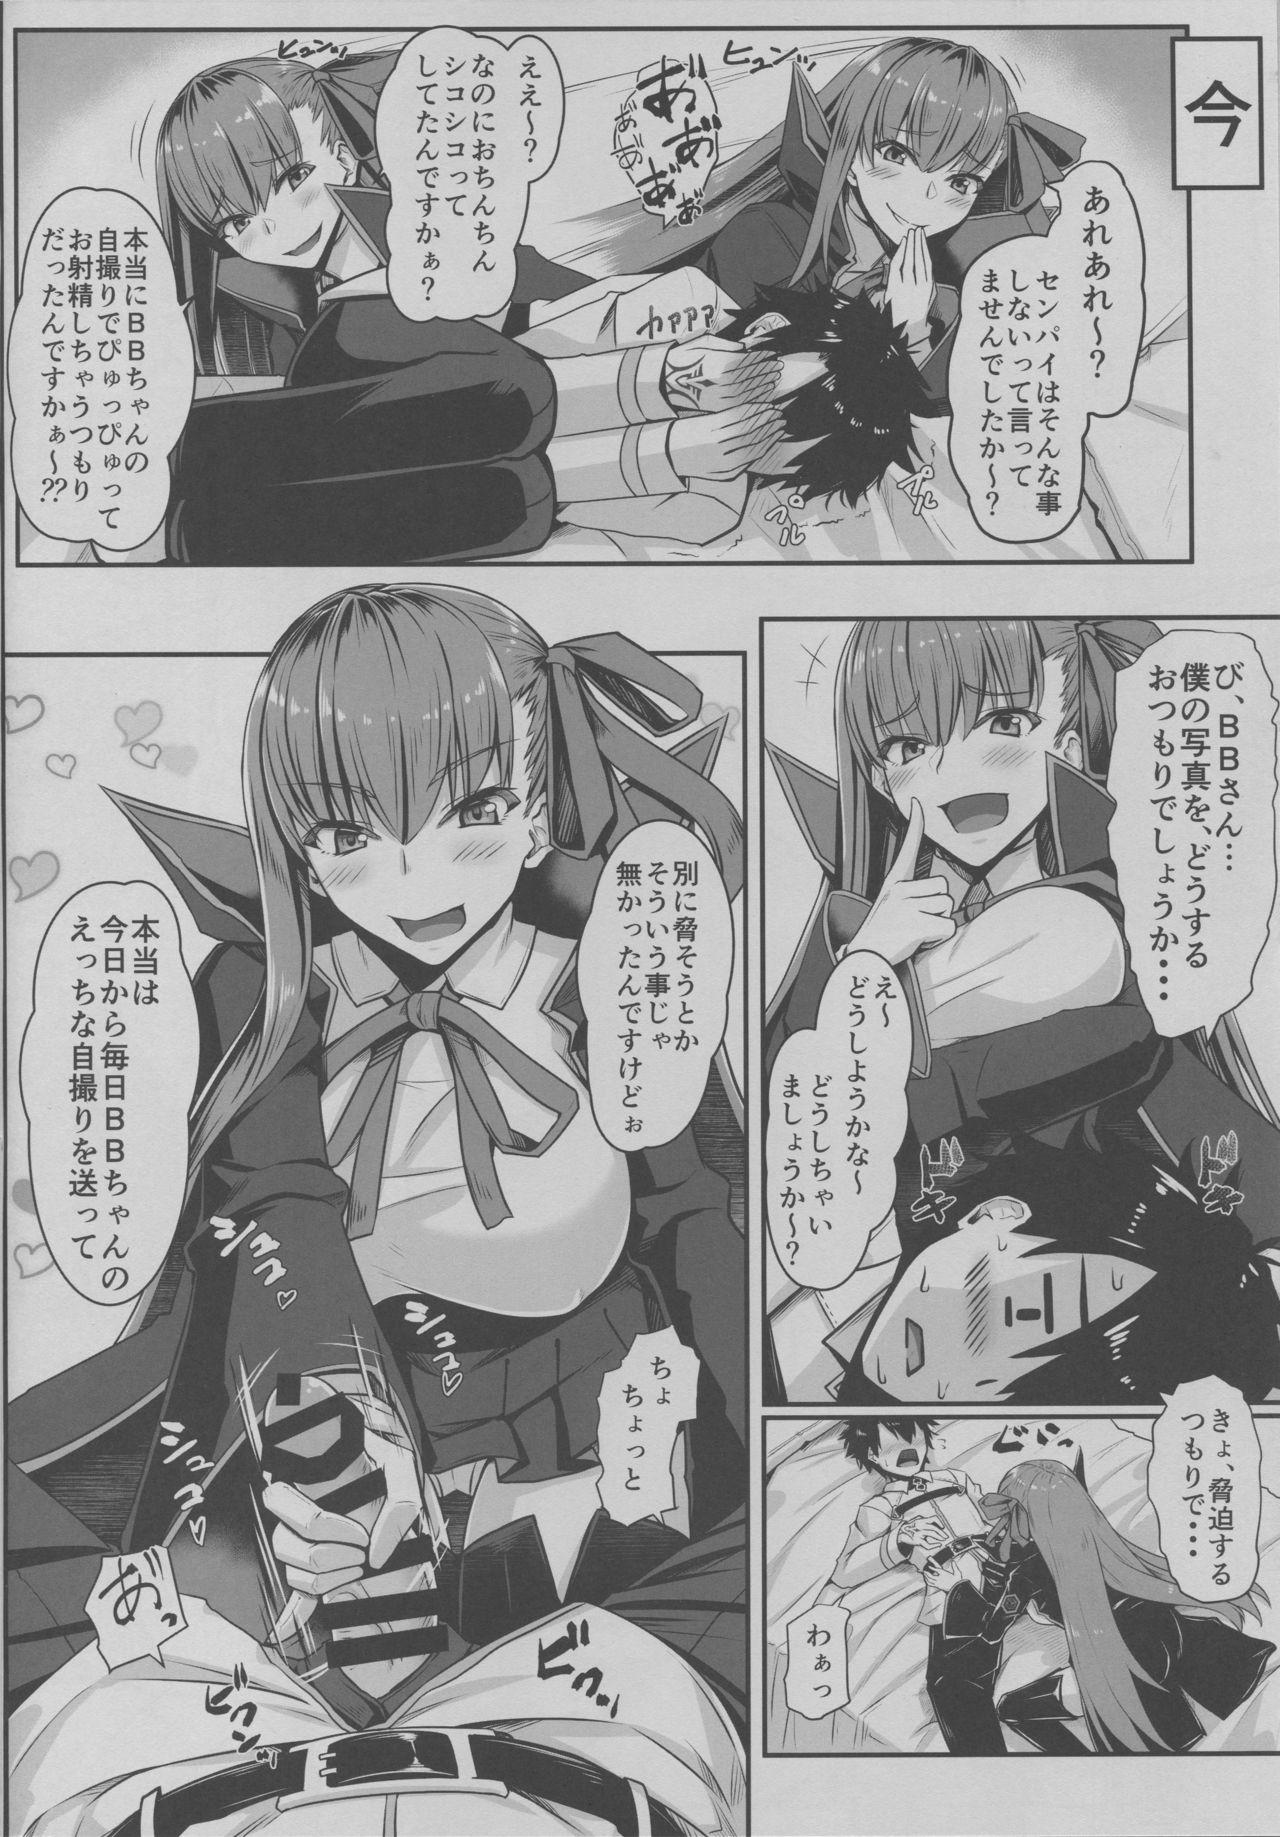 Piss BB-chan no Koto nanka Zenzen Suki ja Nain dakara ne! - Fate grand order Assfingering - Page 5